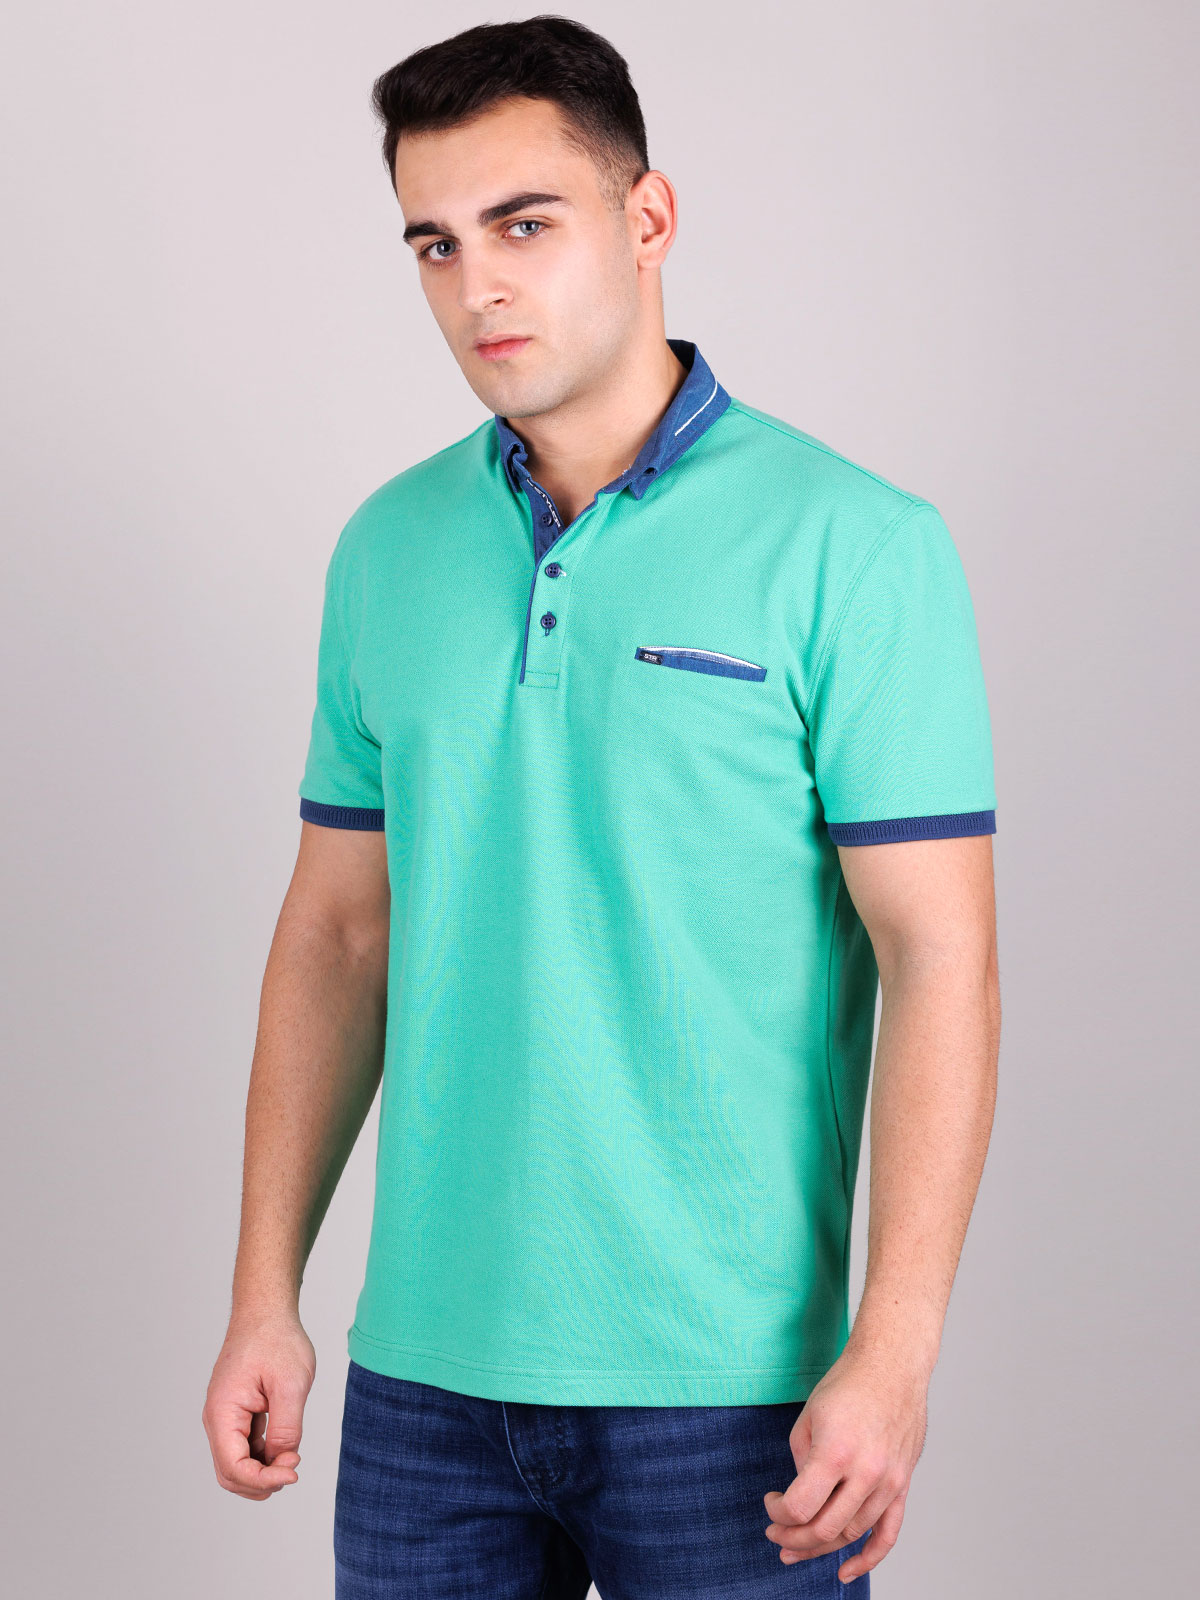 Μπλουζάκι σε πράσινο χρώμα με τζιν γιακά - 93414 € 30.93 img3